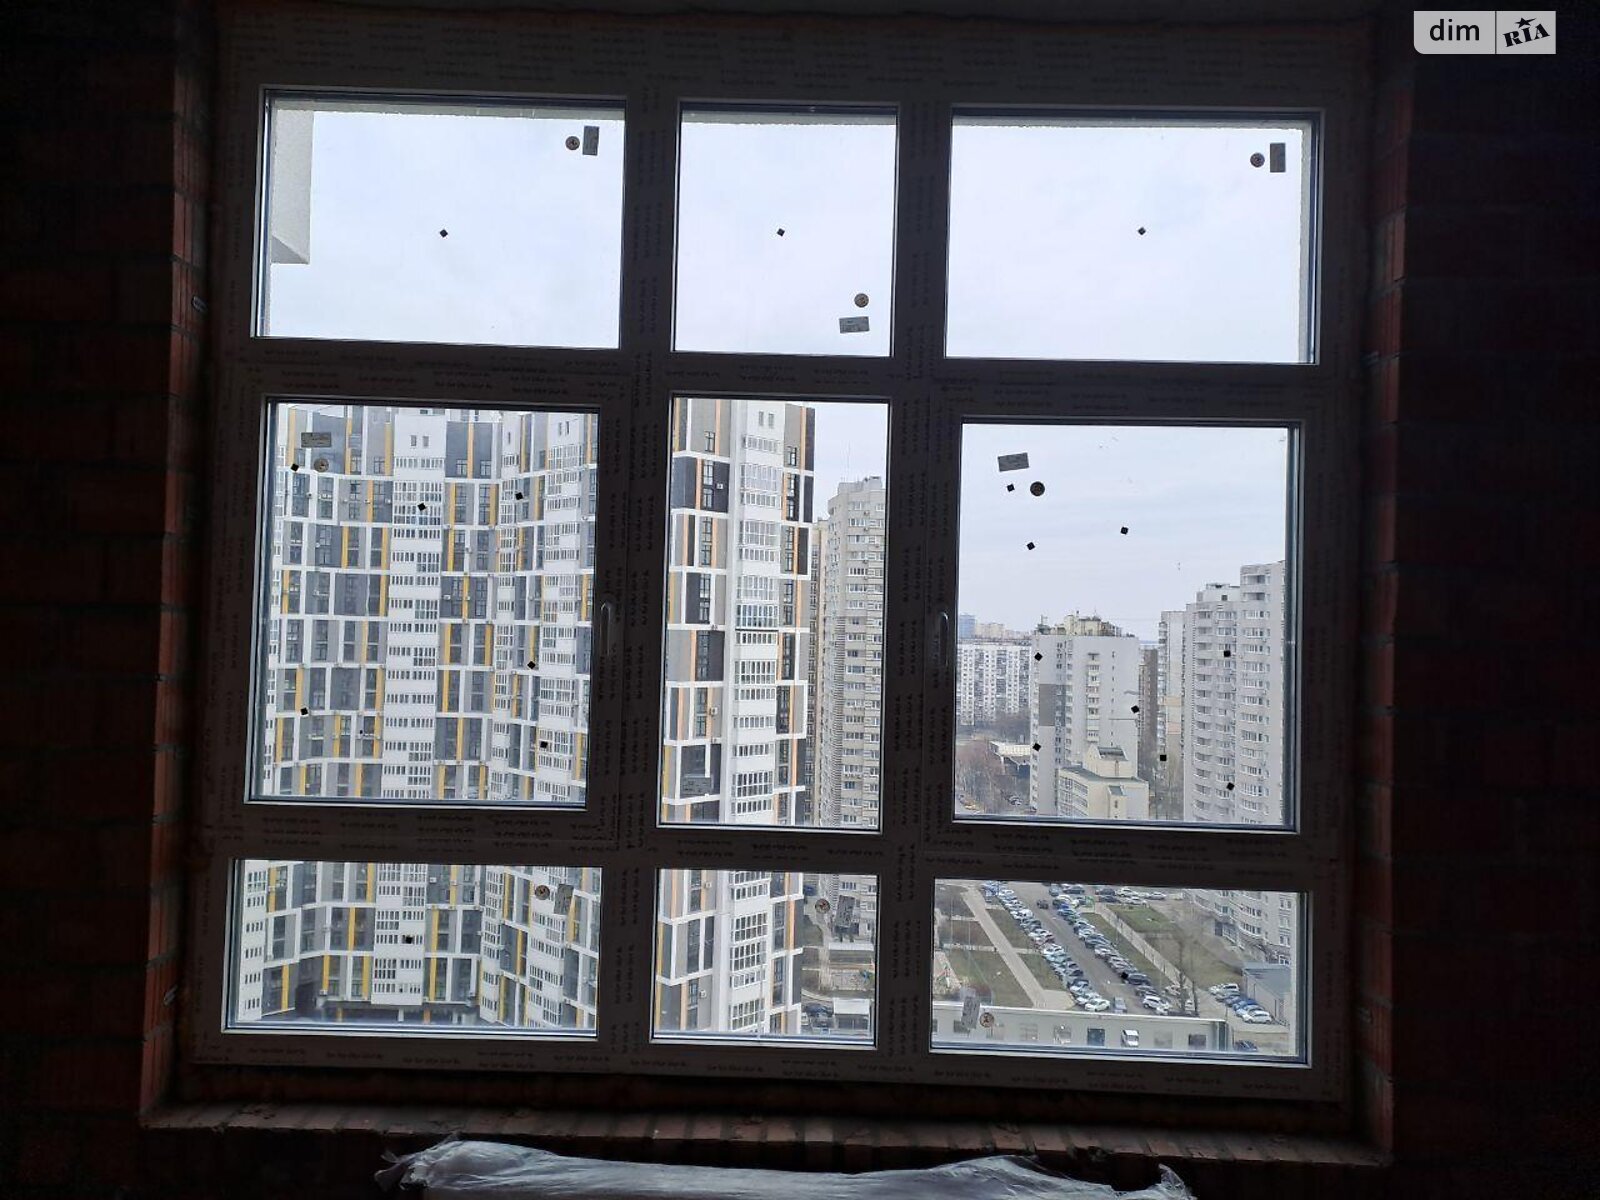 Продажа однокомнатной квартиры в Киеве, на ул. Никольско-Слободская 11, район Левобережный Масив фото 1